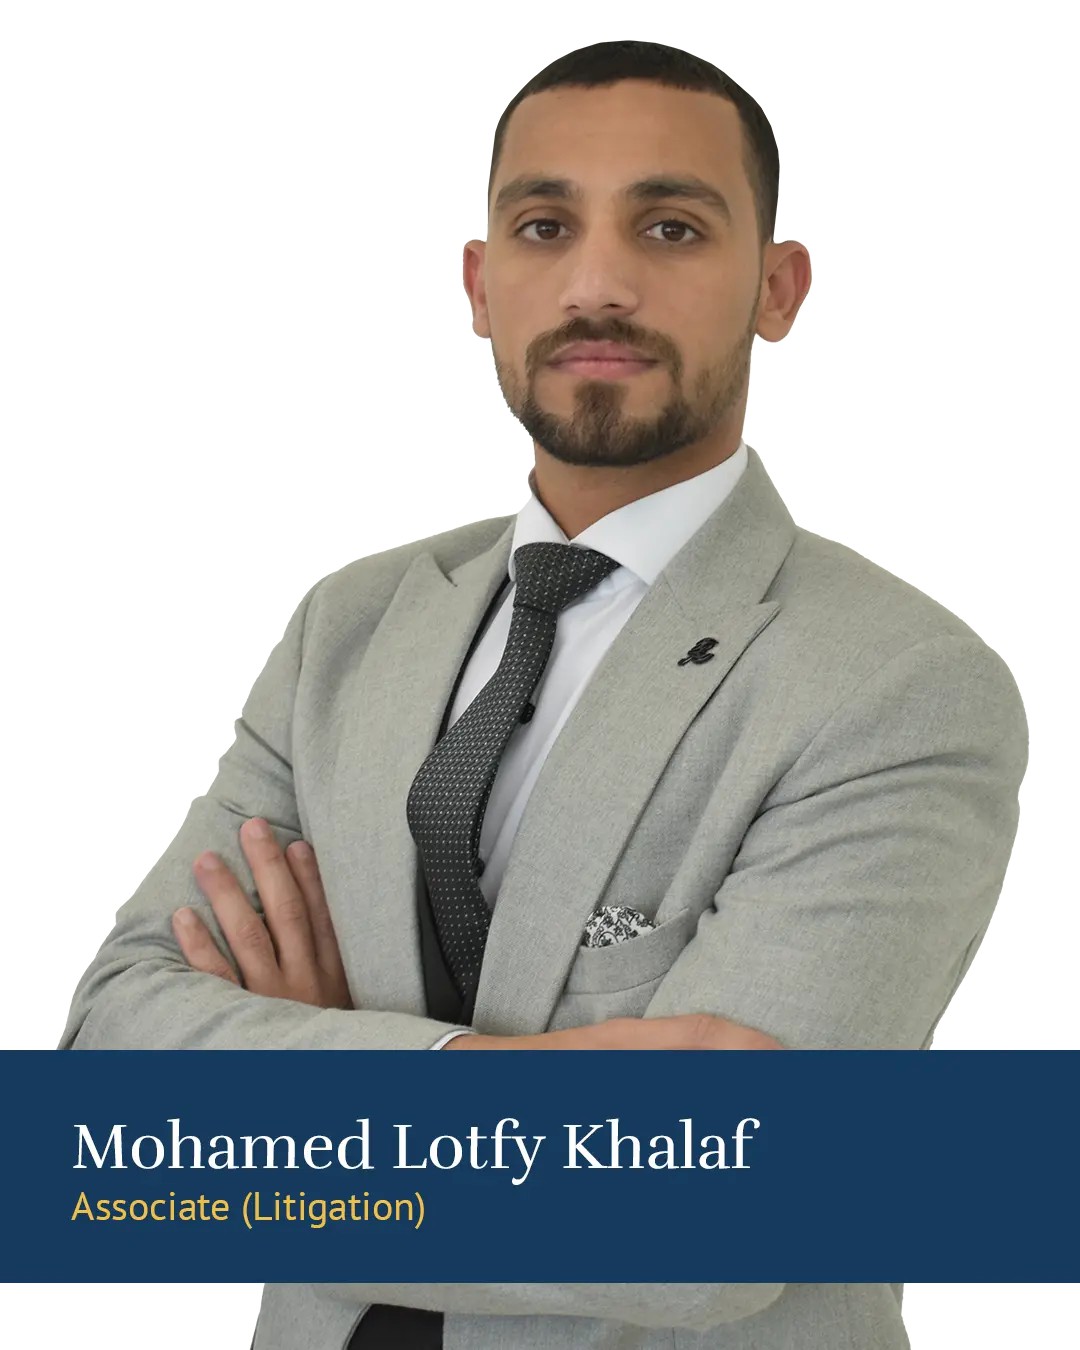 Mr. Mohamed Lotfy Khalaf Ahmed